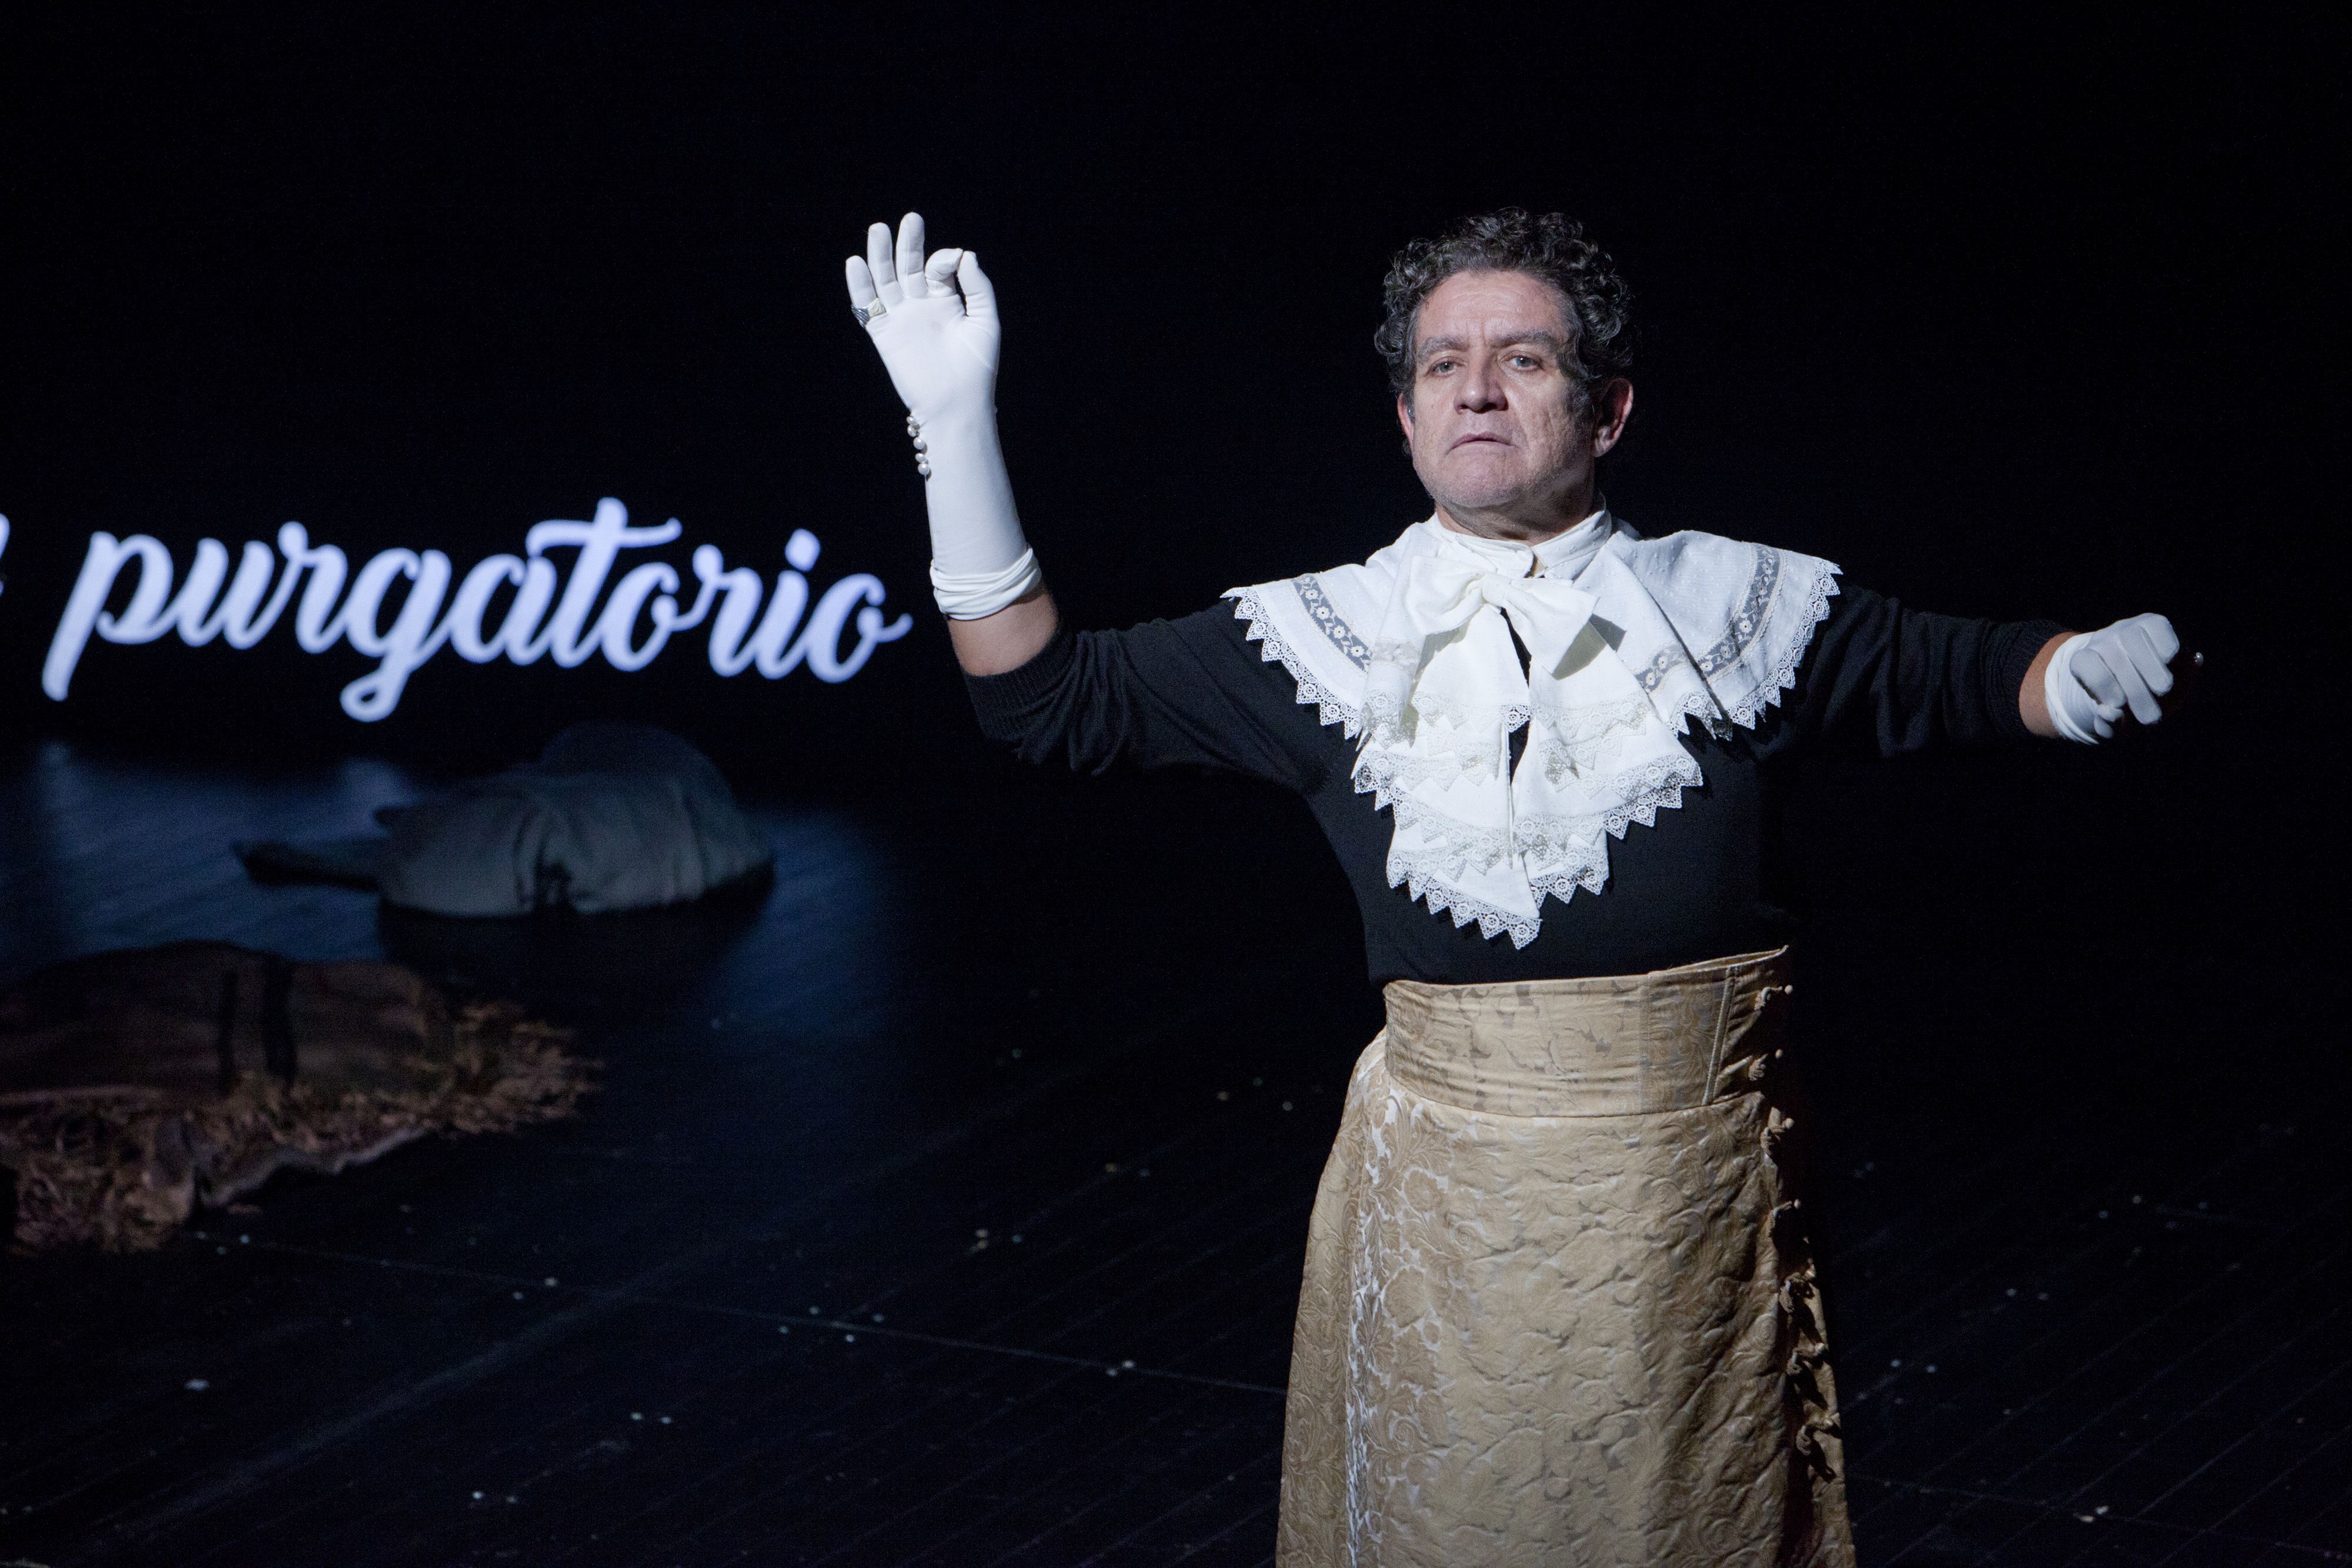 El Teatro Alhambra acoge dos funciones de la obra ‘Torquemada’ basada en la tetralogía de Pérez Galdós